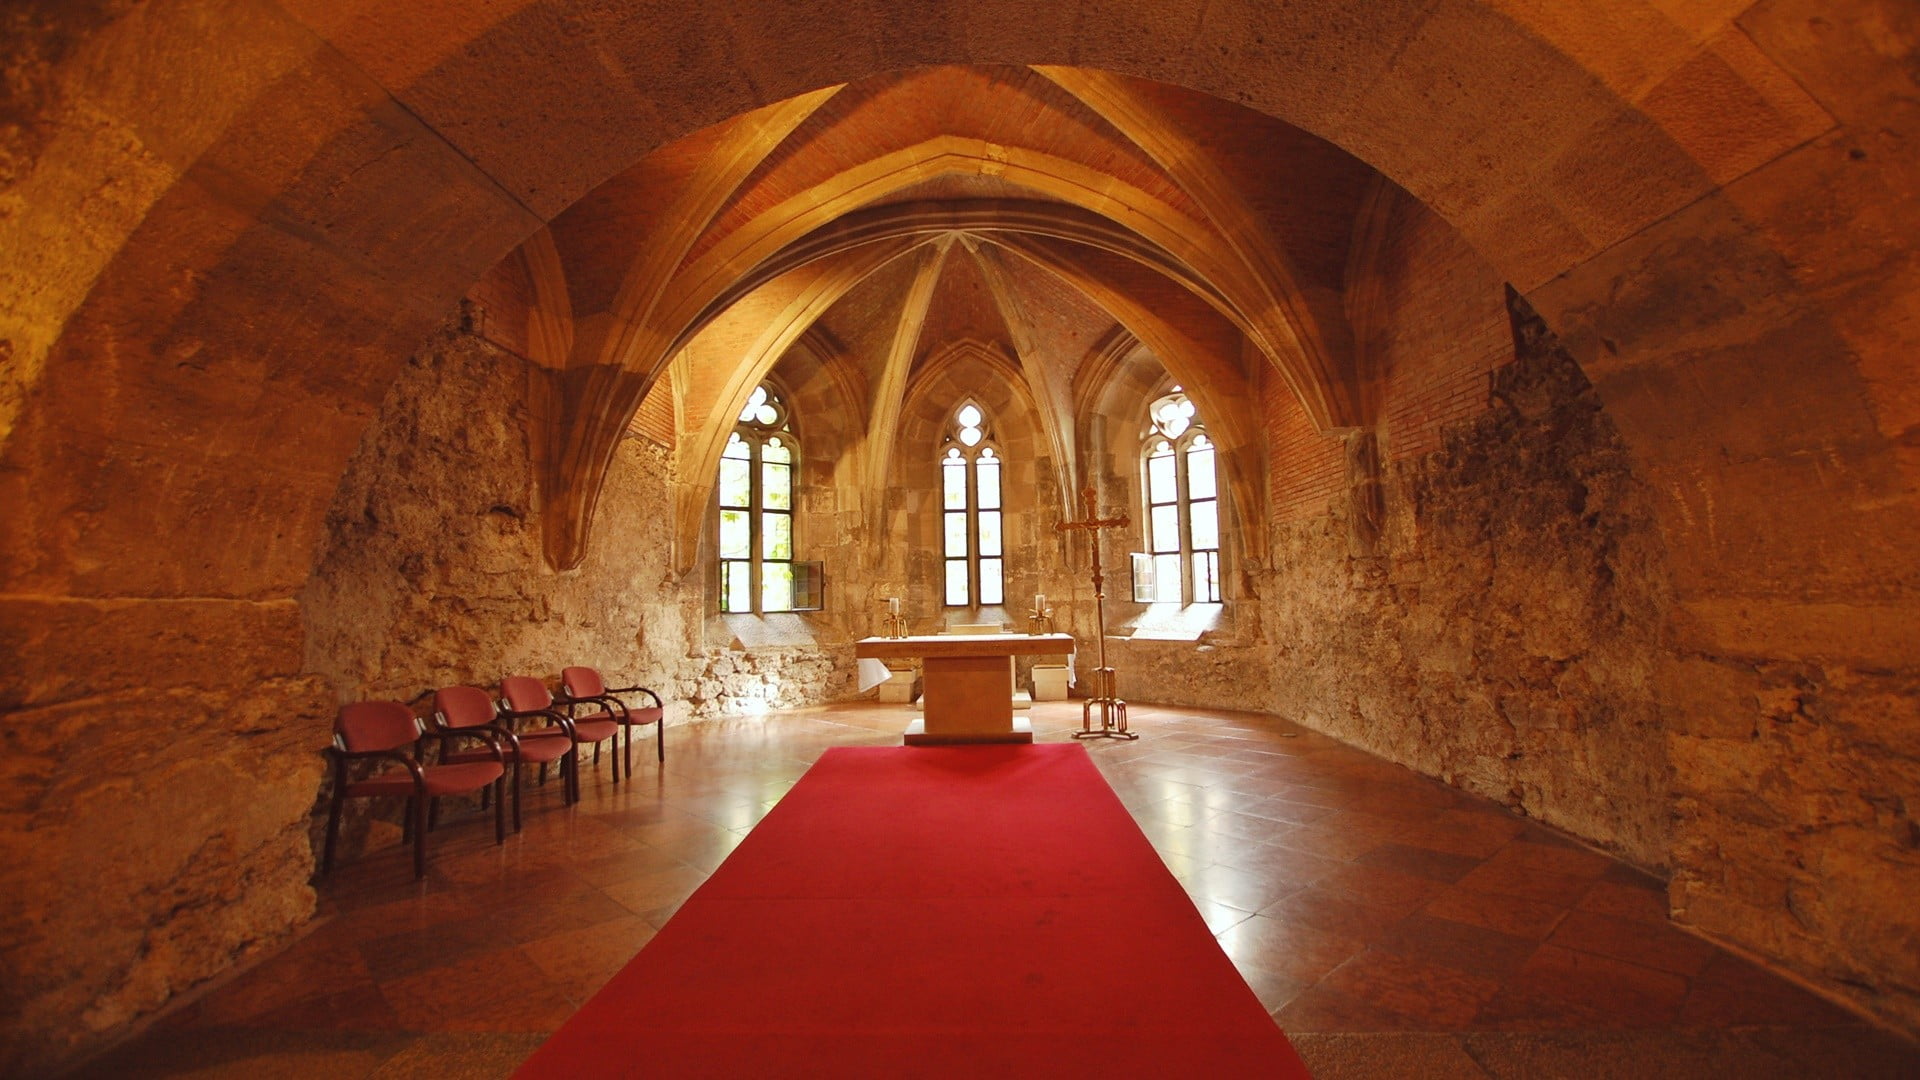 Credence table, castle, church, interior, cross, Altar, chair